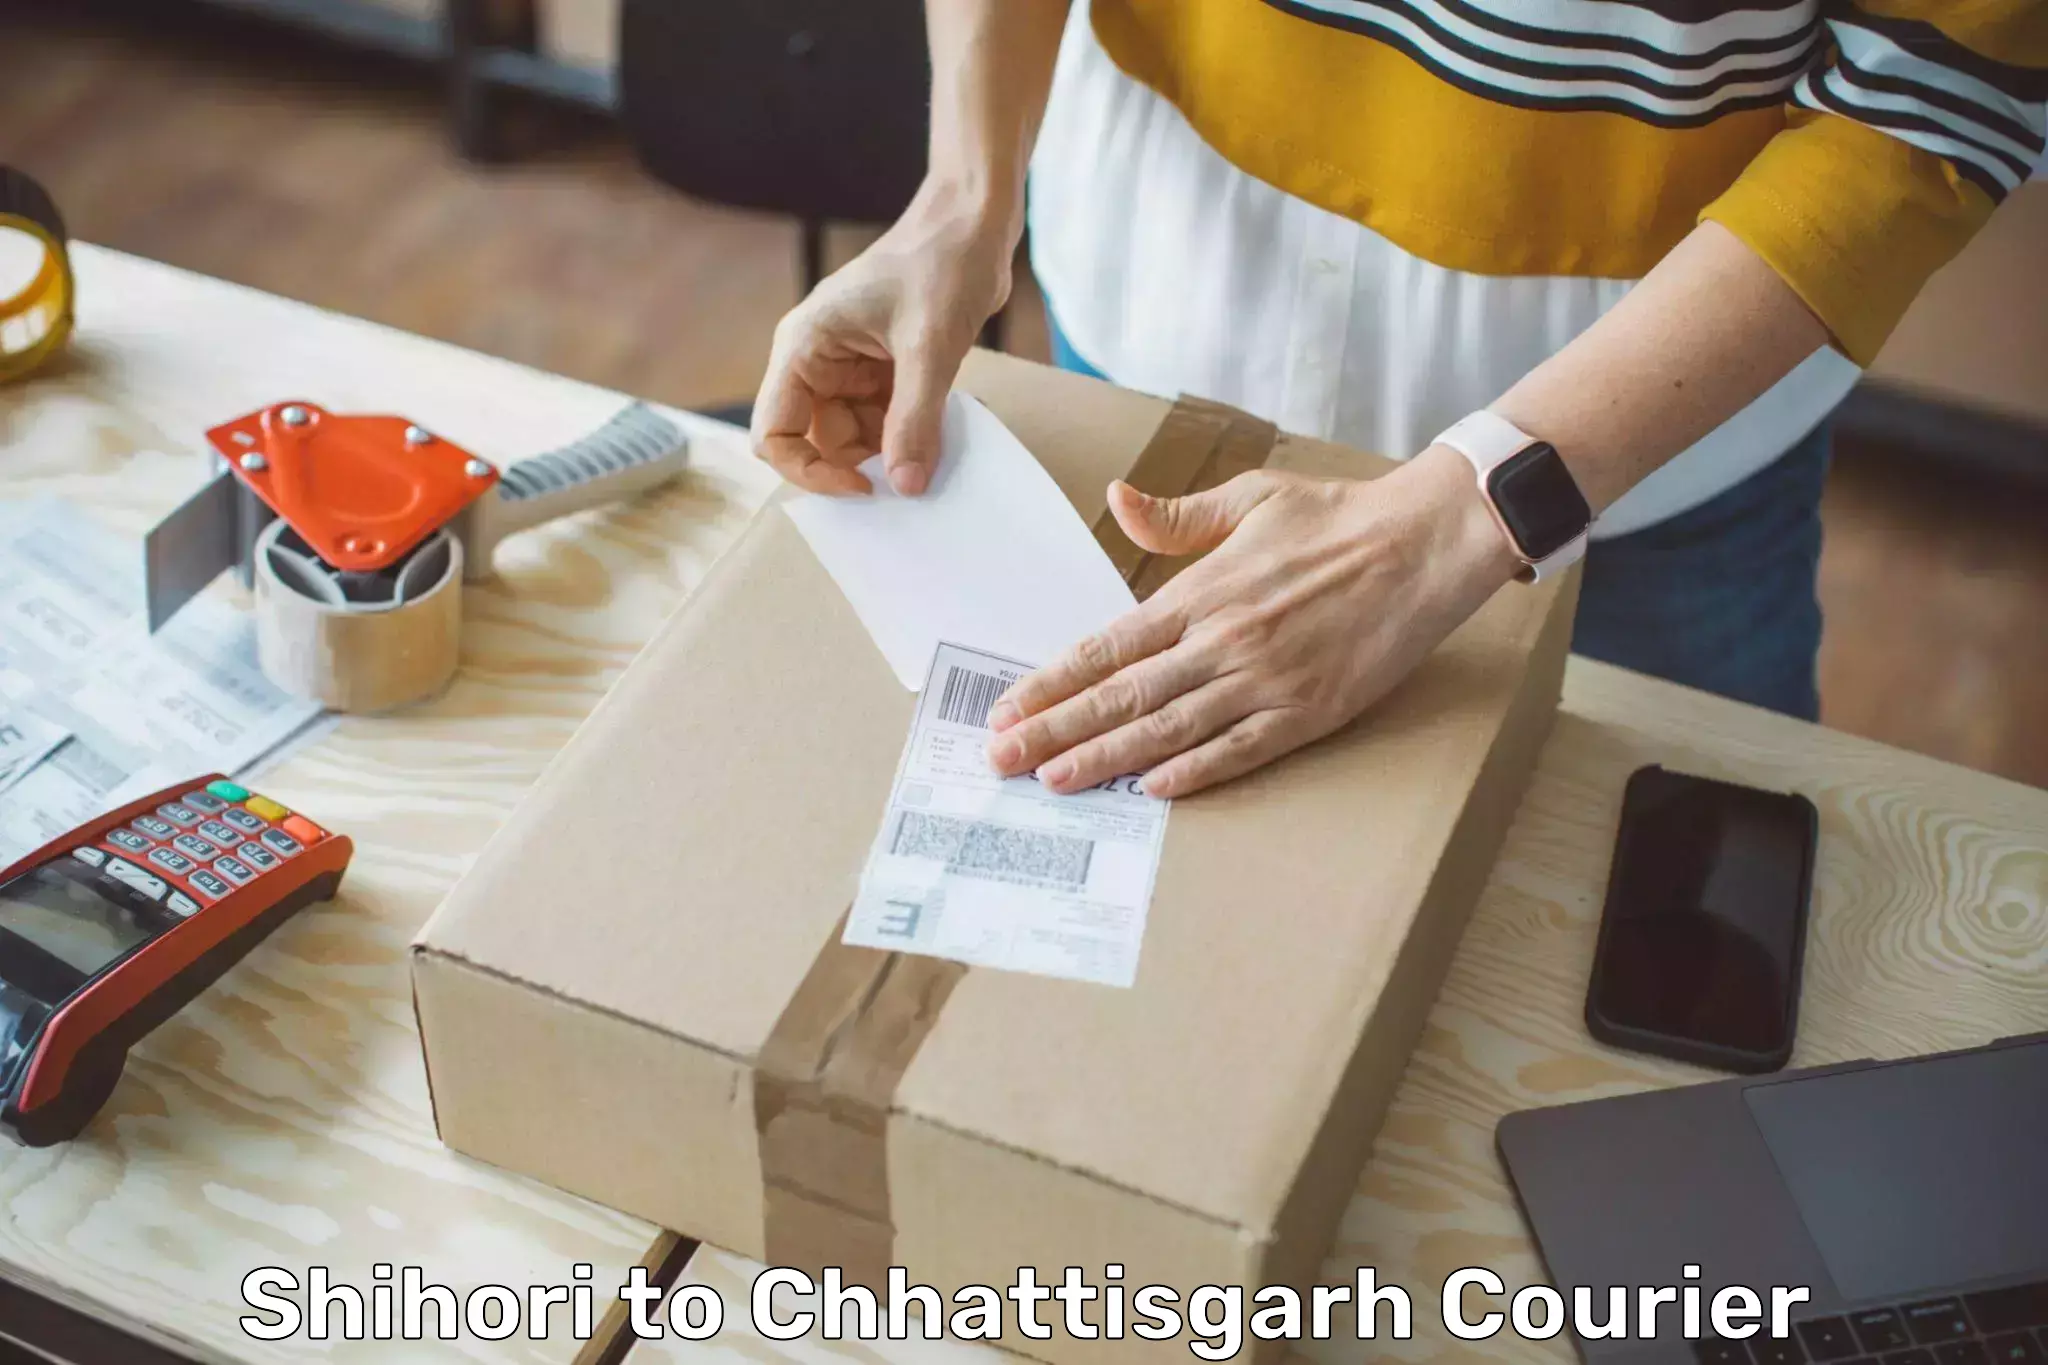 Personalized courier experiences Shihori to Sakti